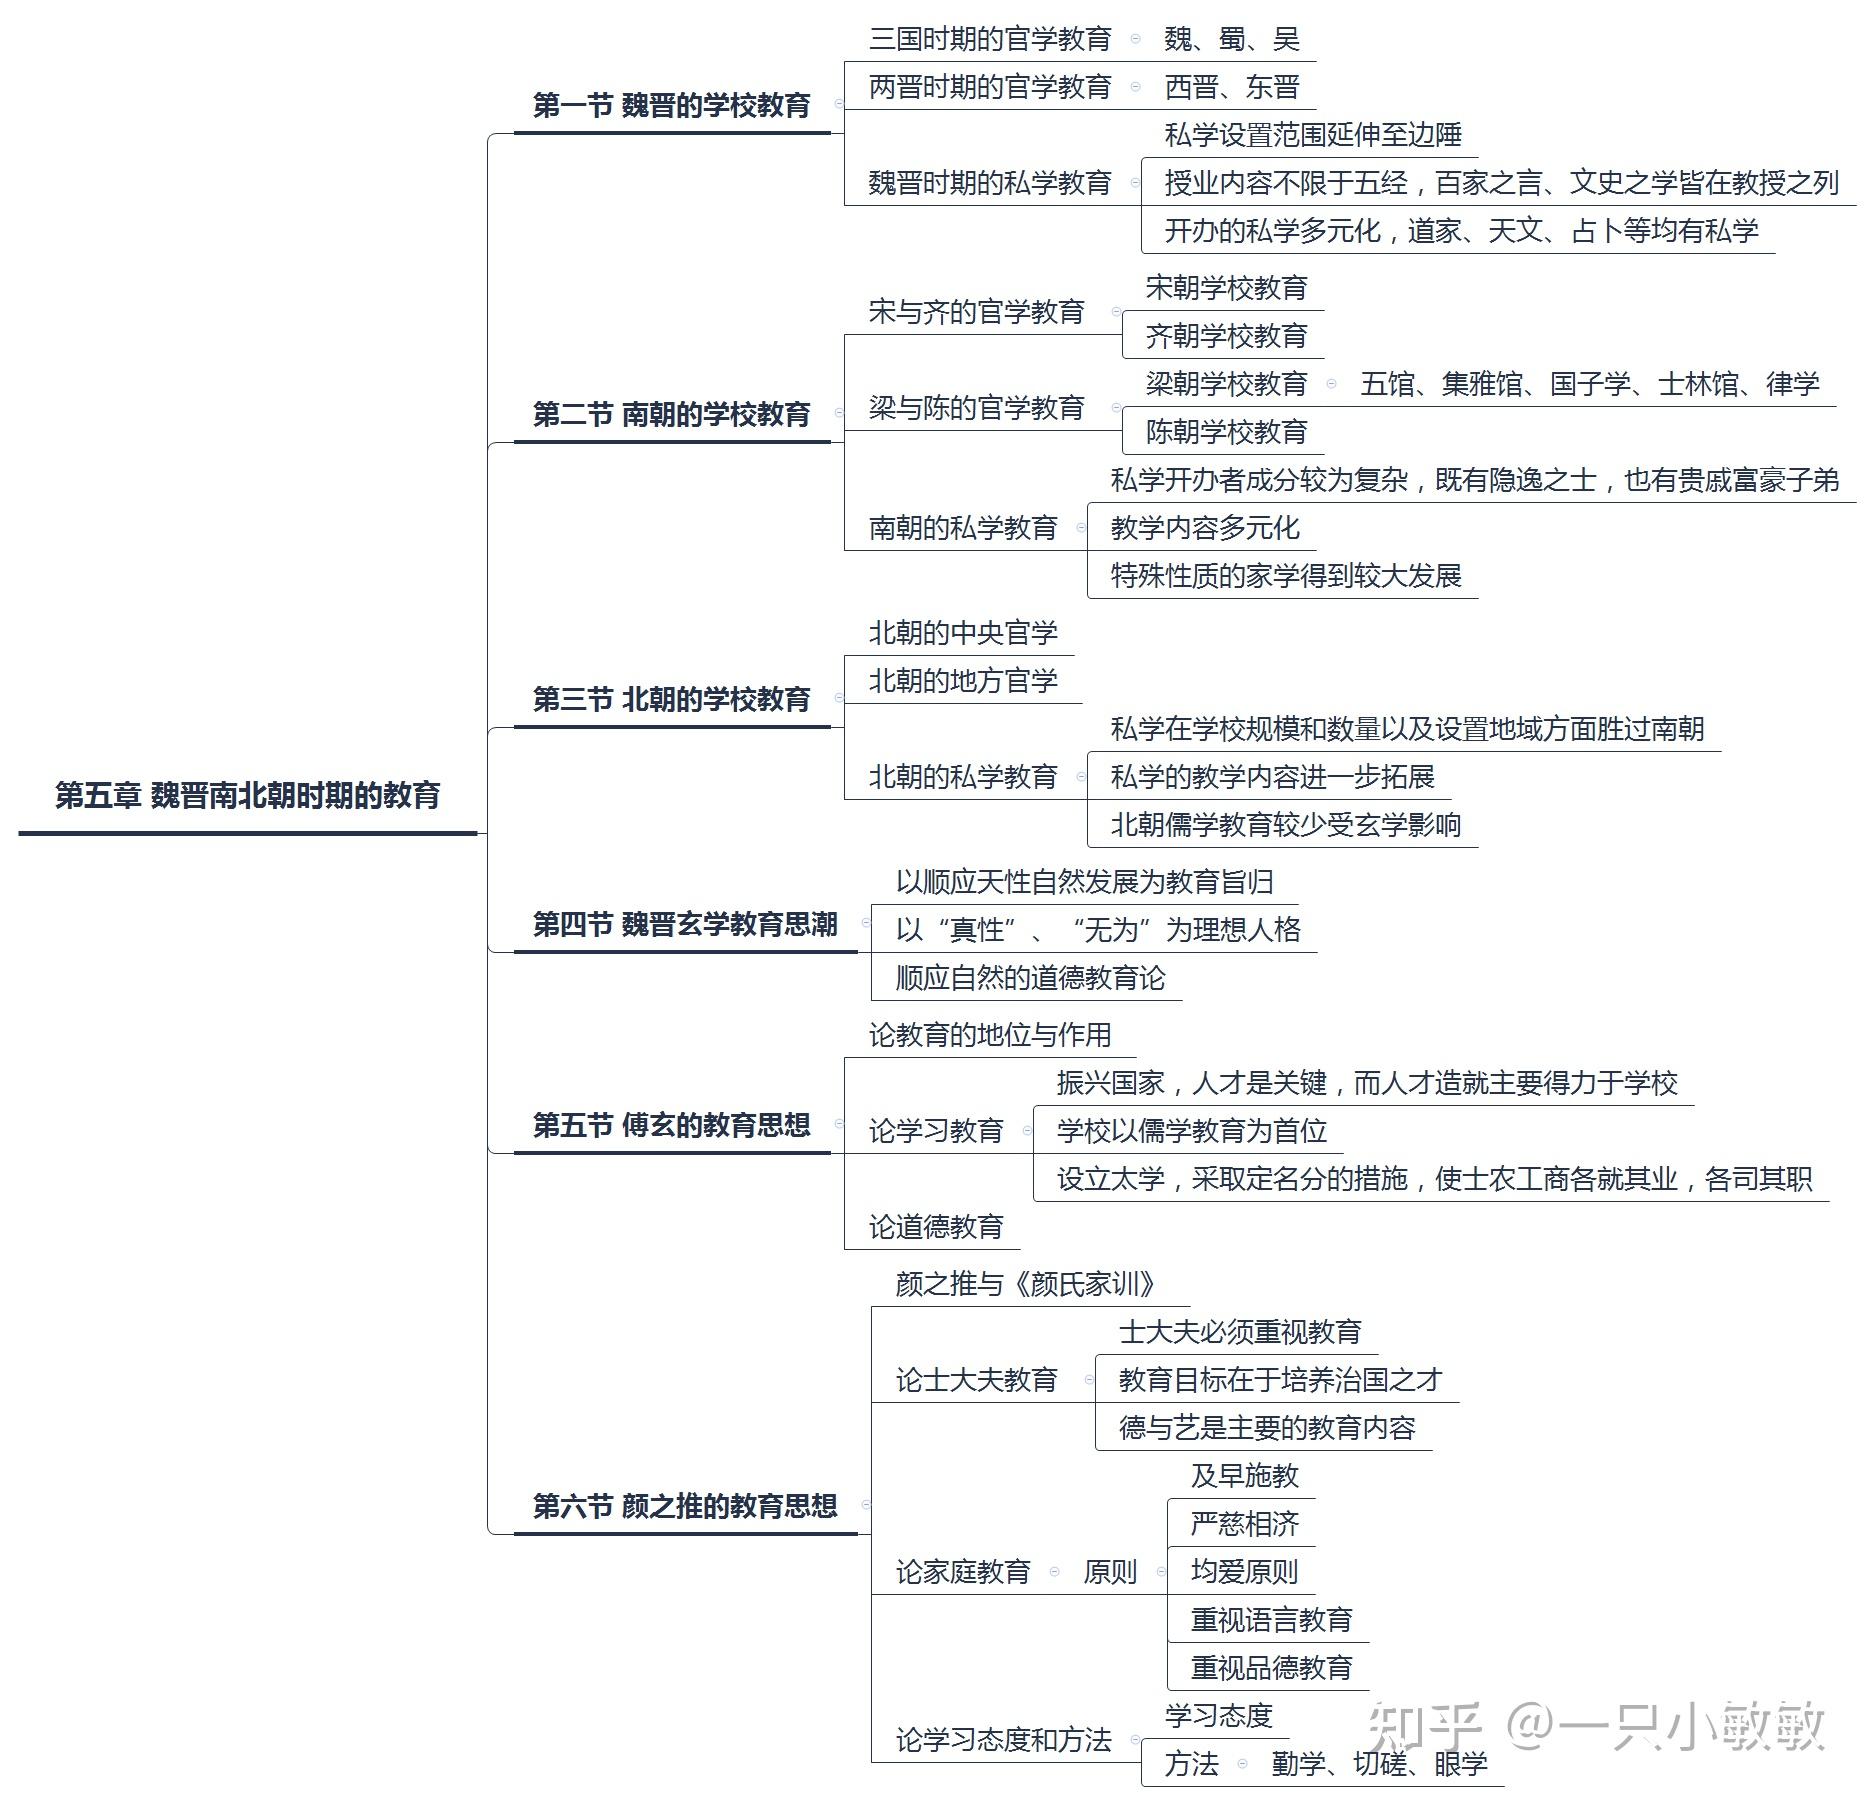 中国教育史树状图图片